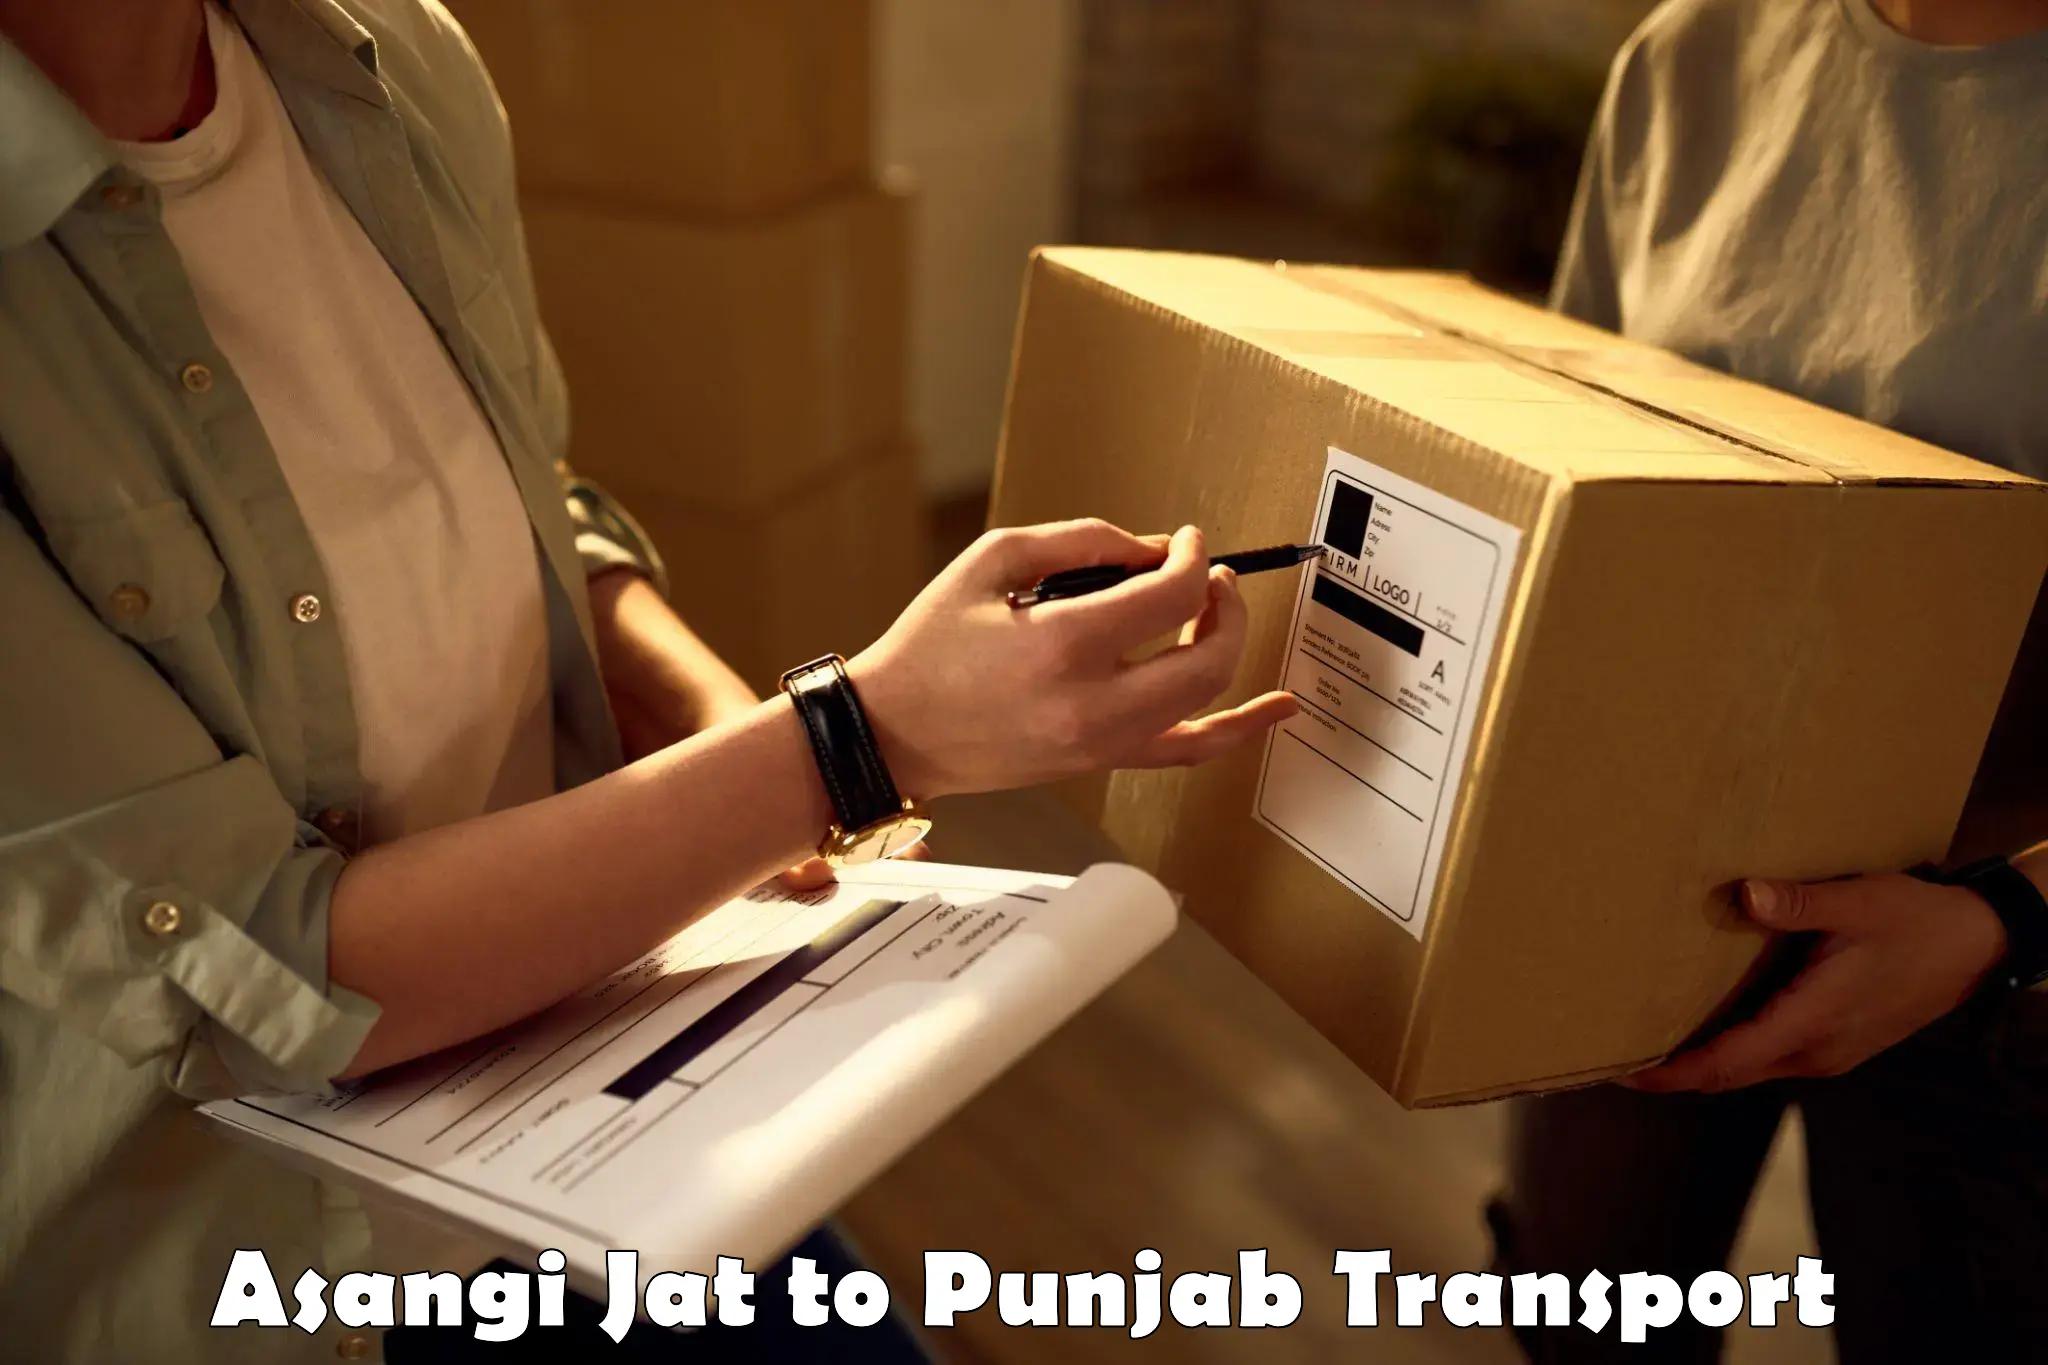 Delivery service Asangi Jat to Punjab